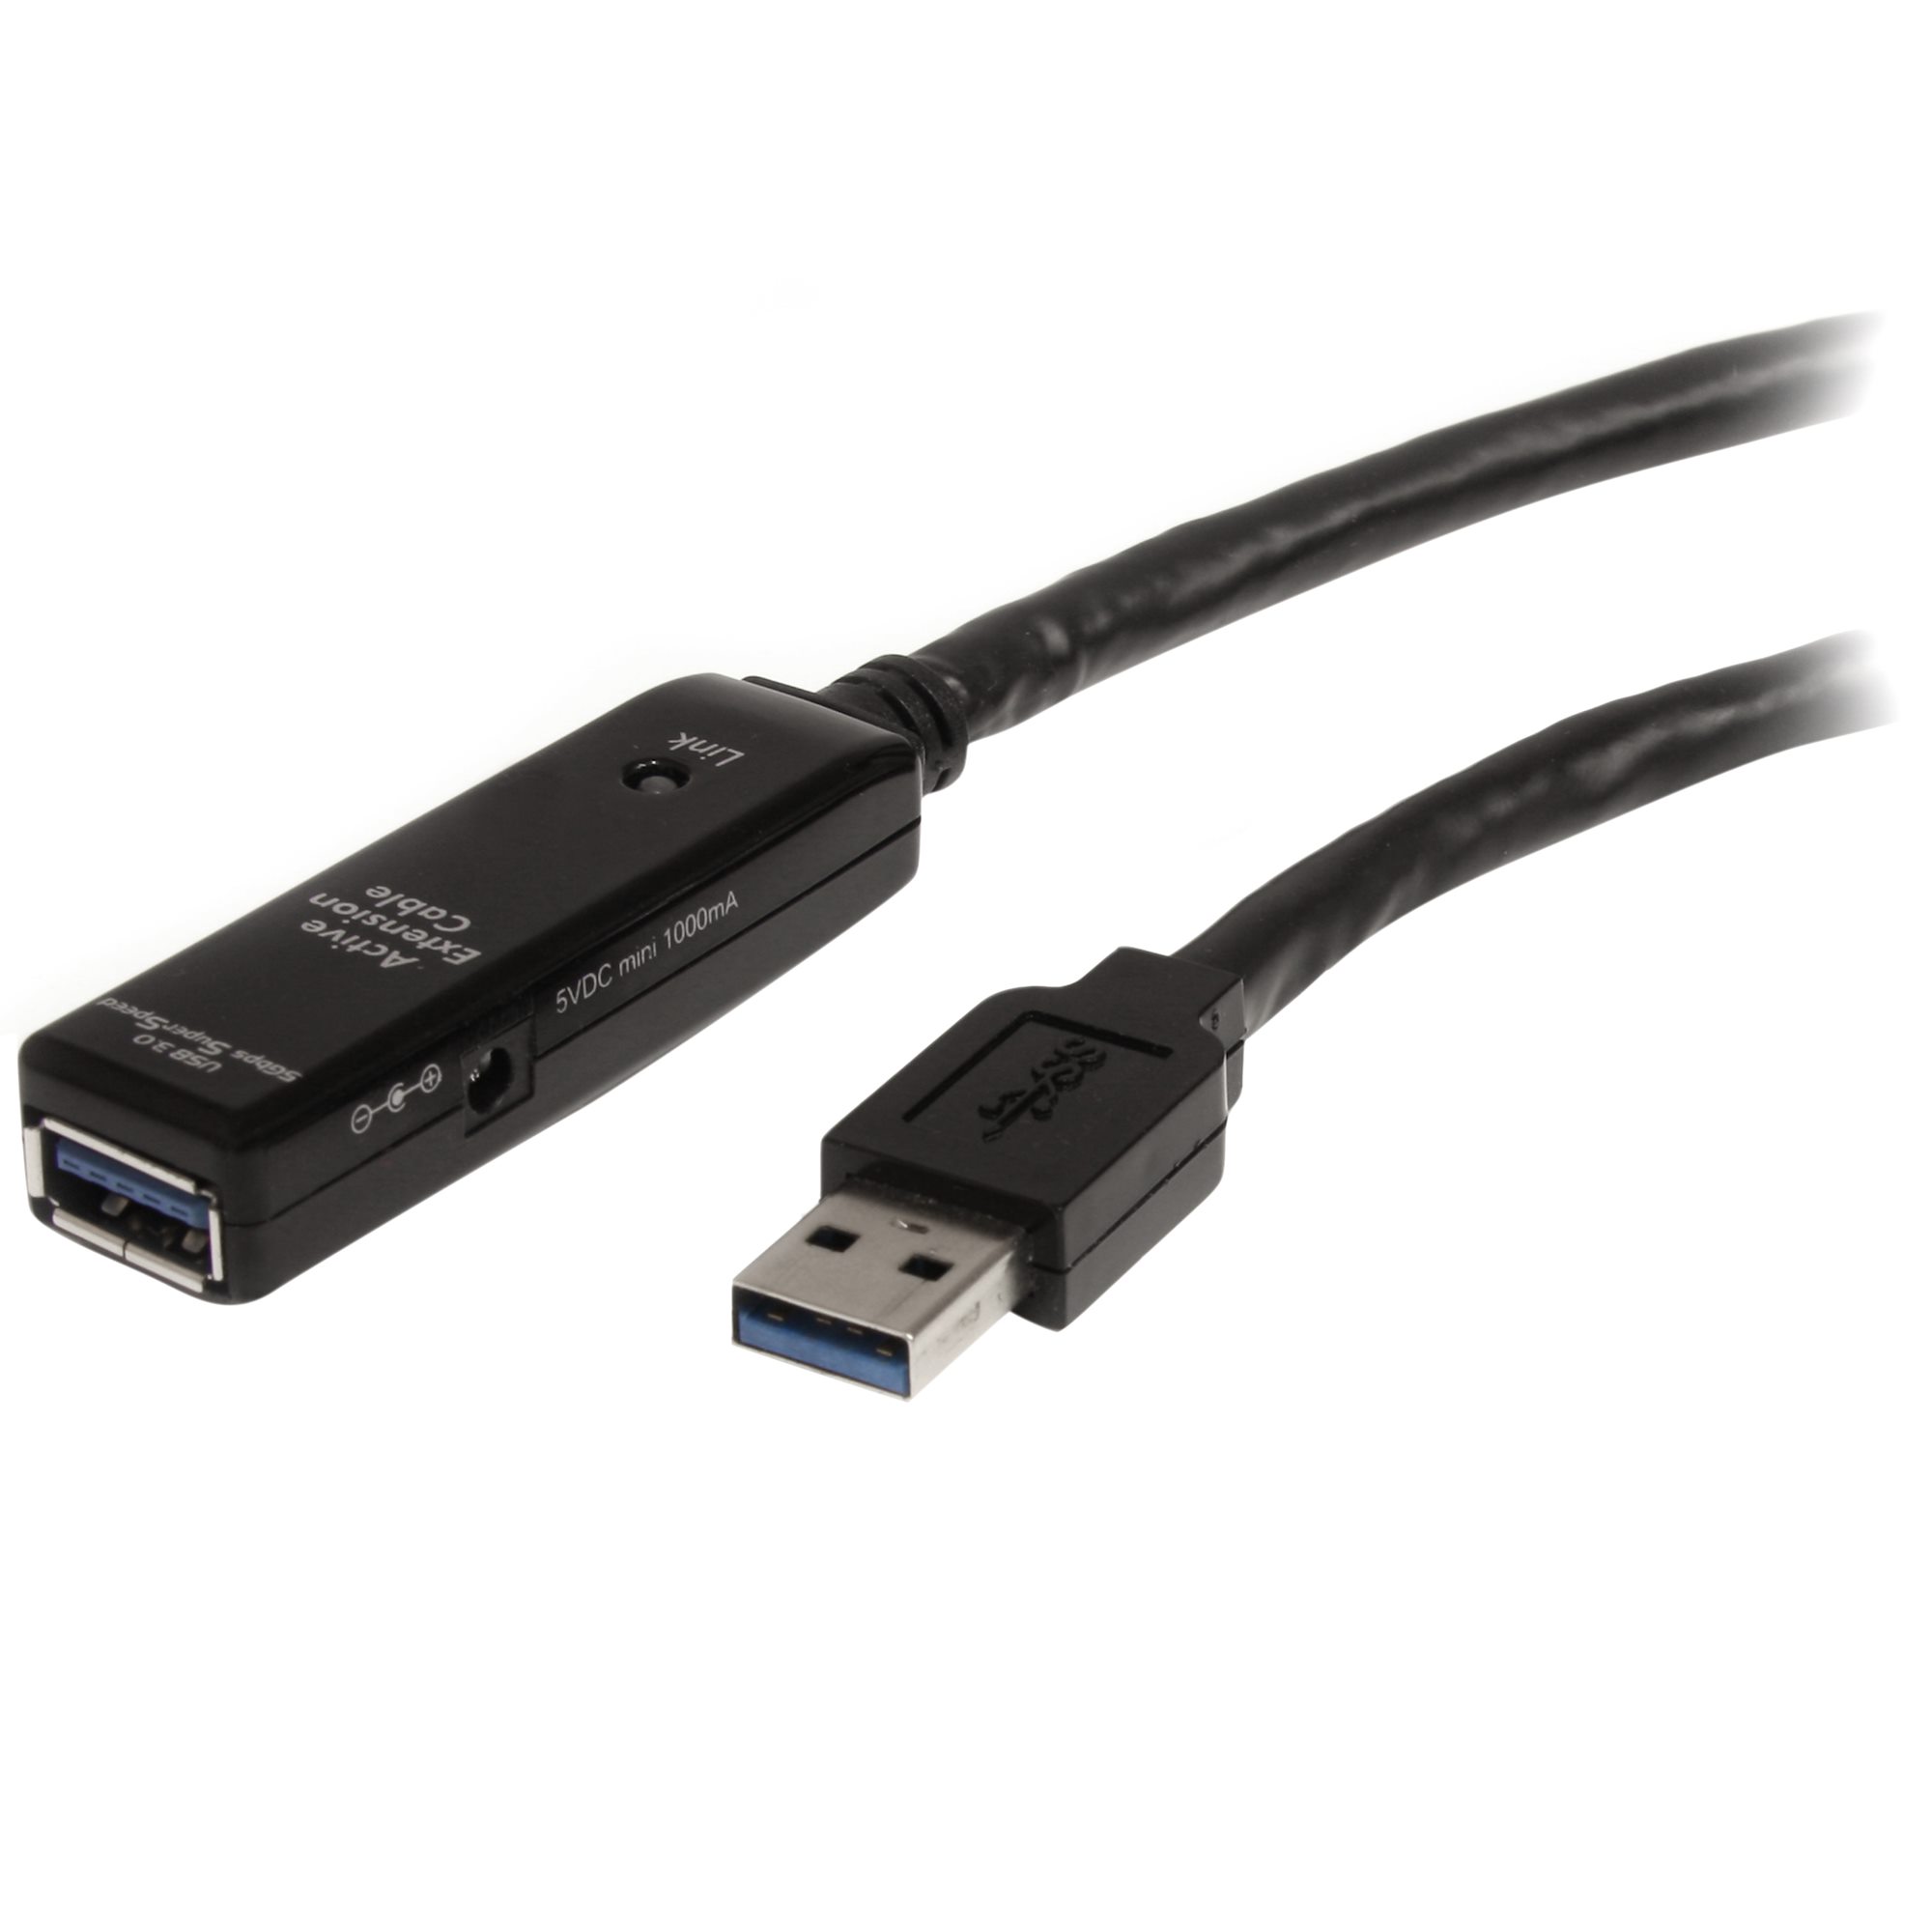 【USB3AAEXT5M】5M USB 3.0 ACTIVE EXTENSION CABL